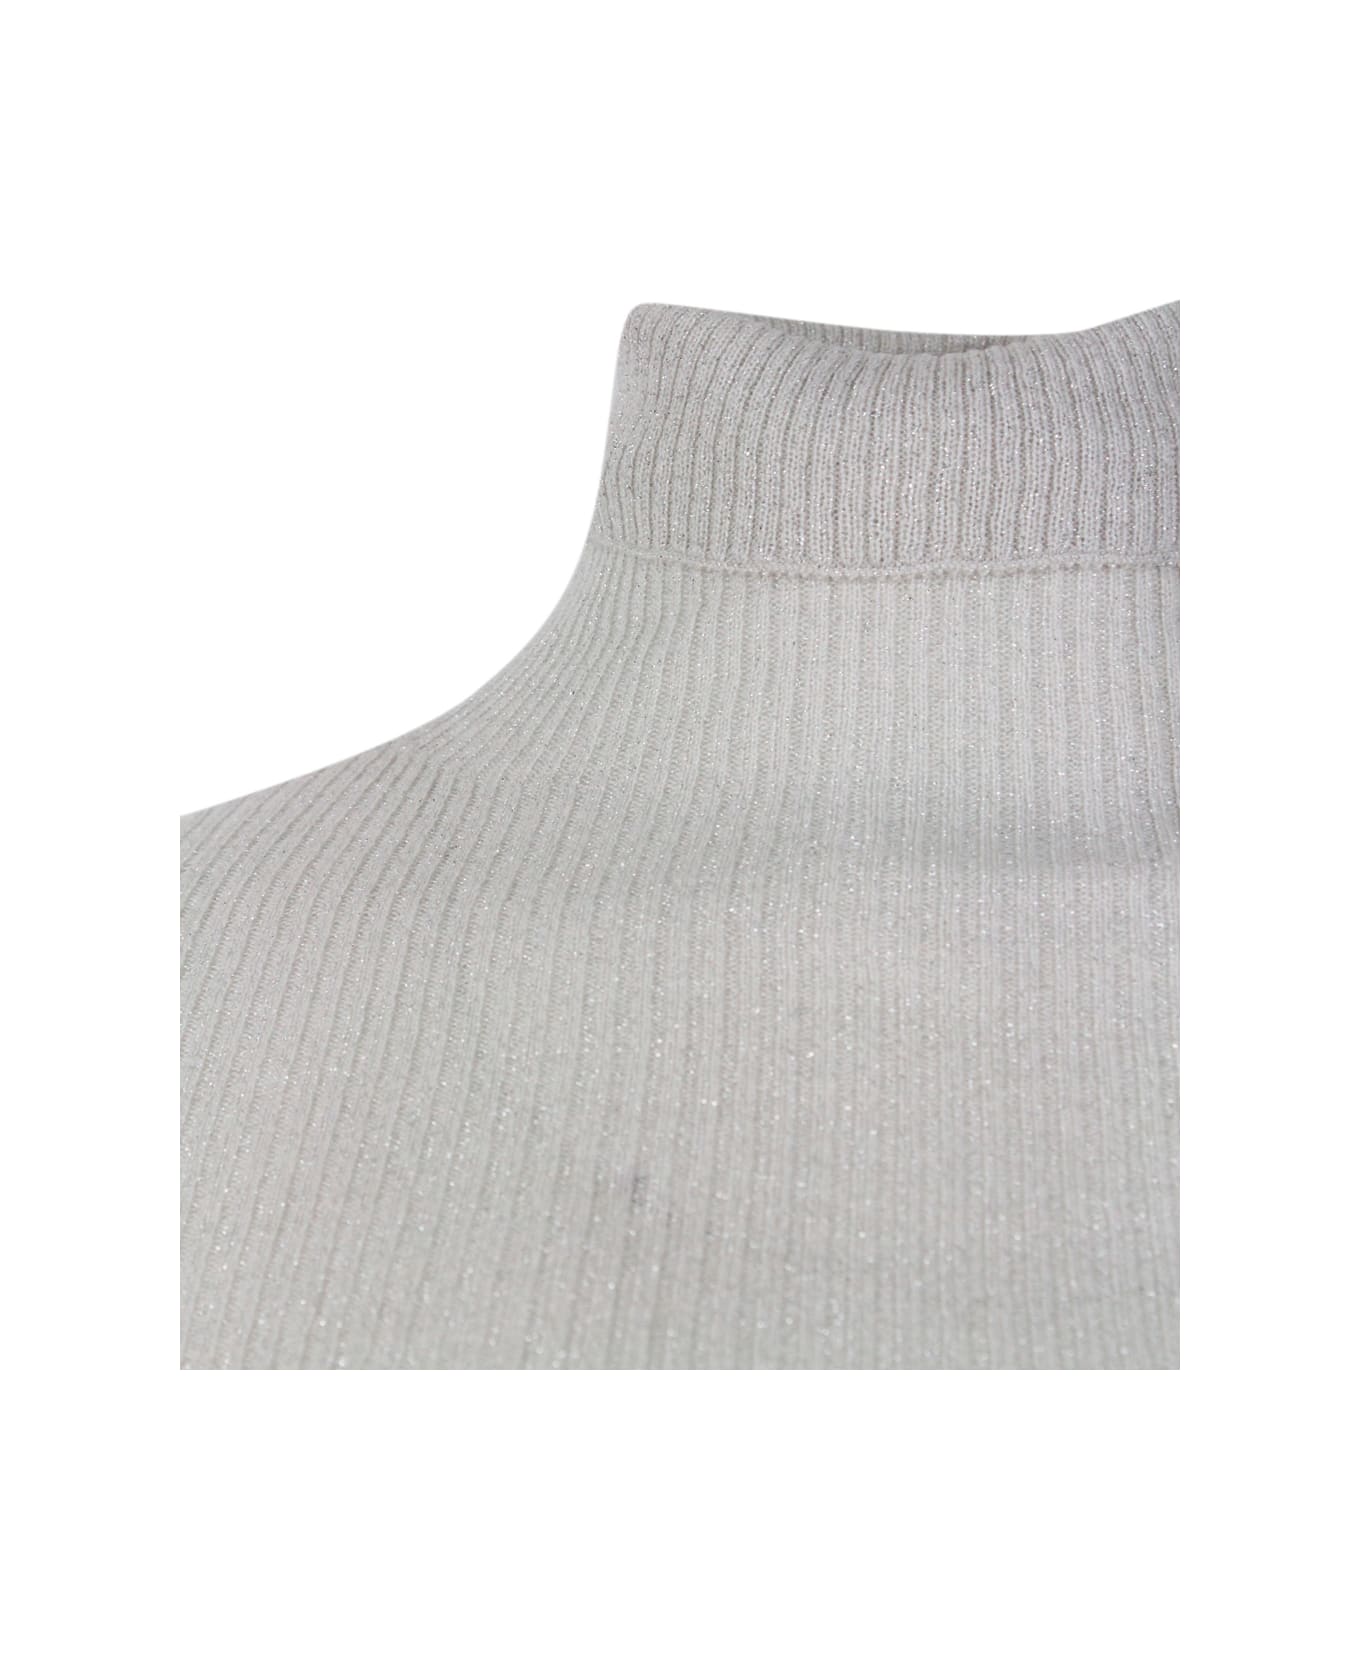 Fabiana Filippi Long-sleeved Turtleneck Sweater In Merino Lamè Embellished With Shiny Lurex That Gives Brightness - Beige ニットウェア